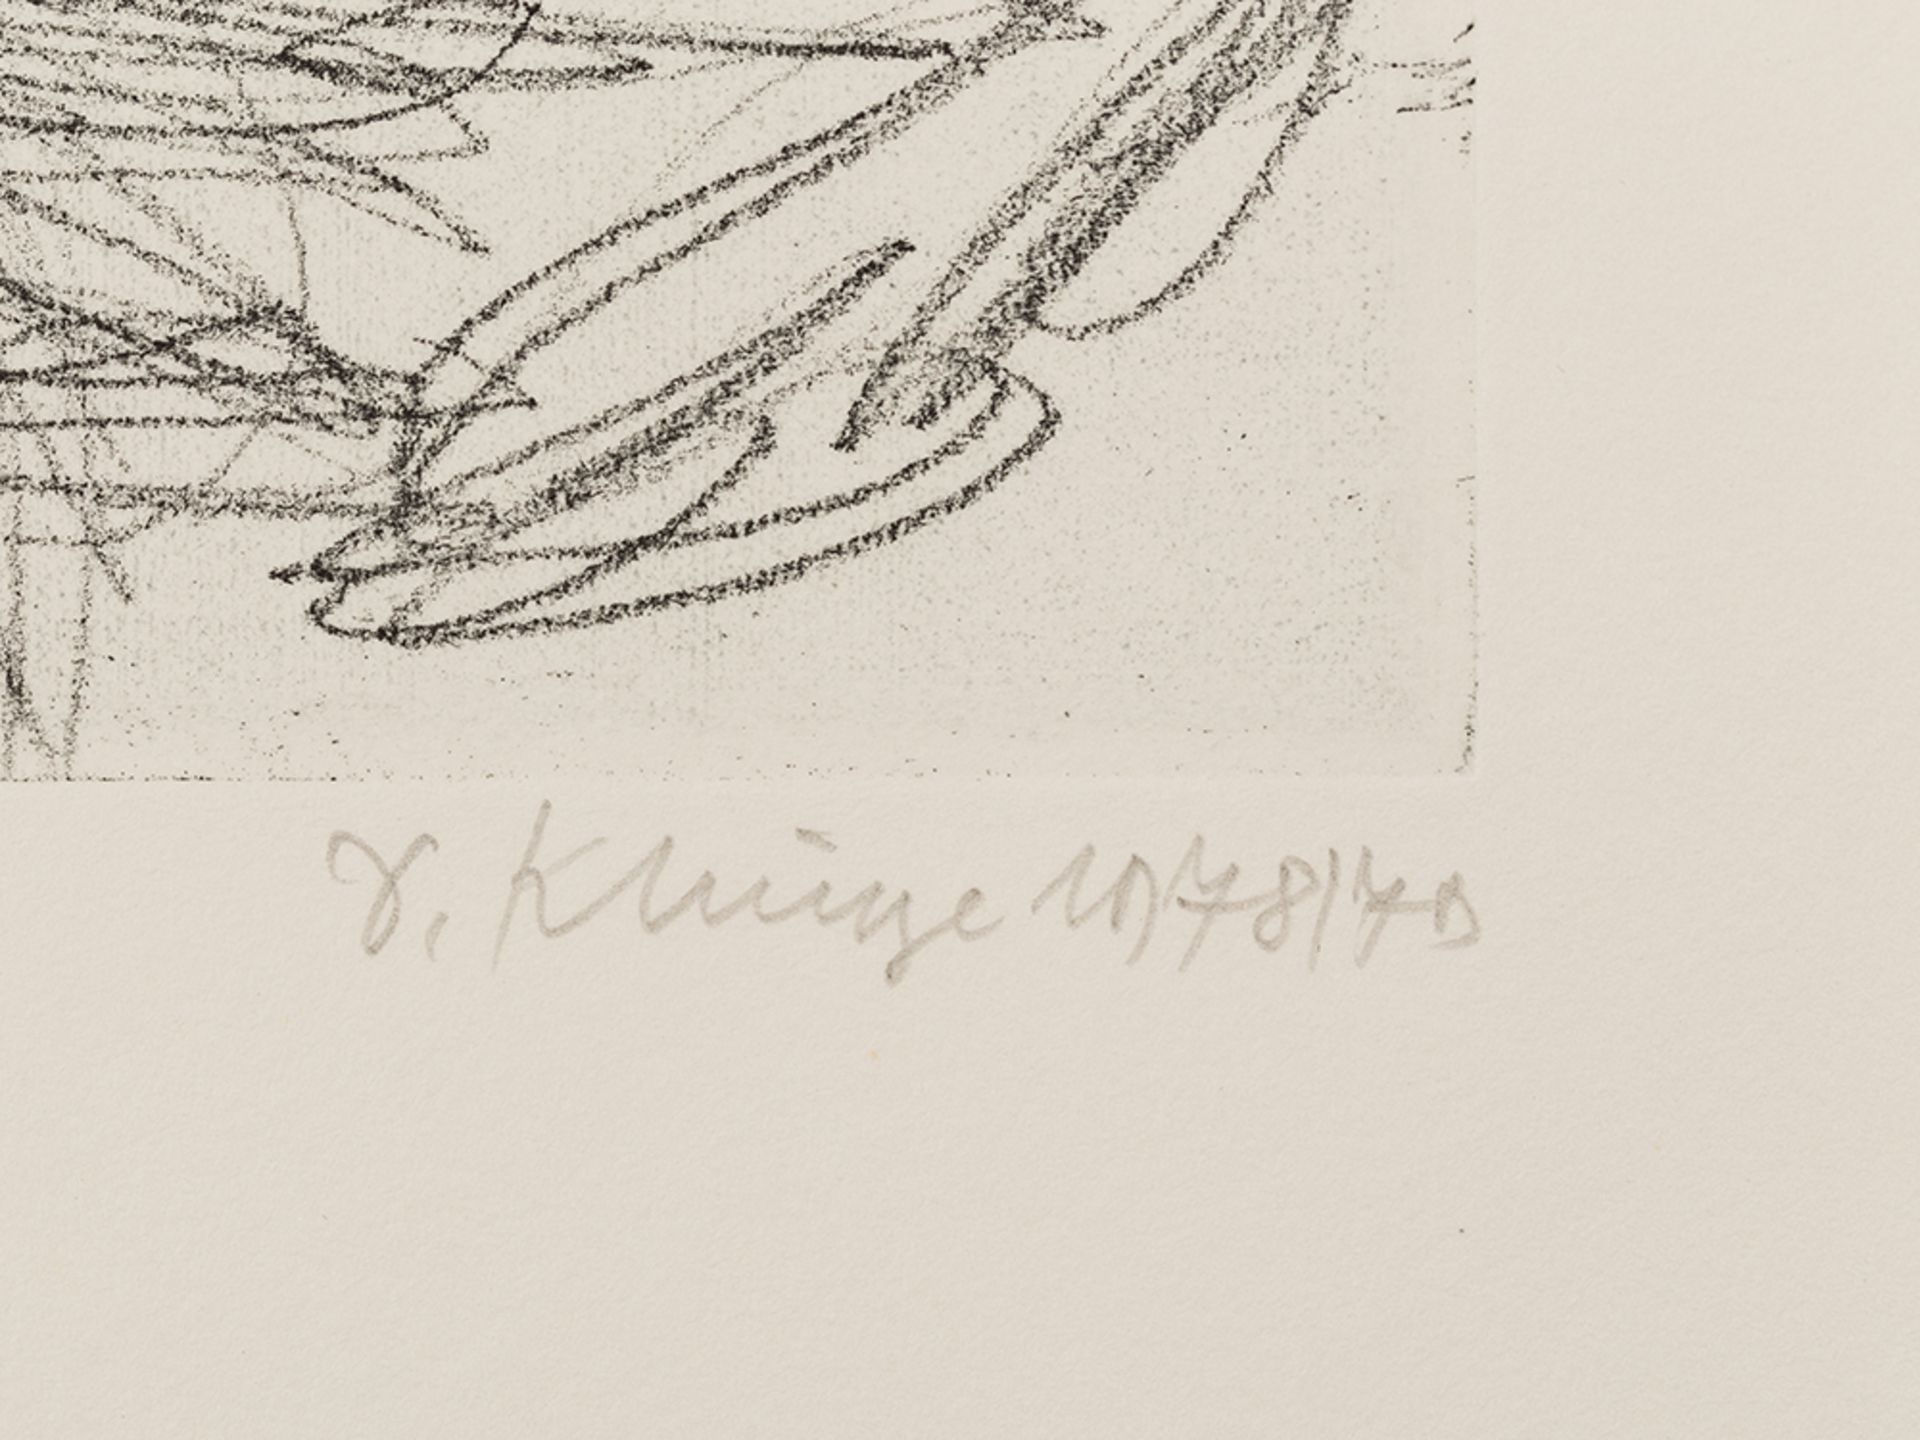 Dietrich Klinge, Kreuzigung, Cycle of 19 Etchings, 1978/79 - Image 6 of 30